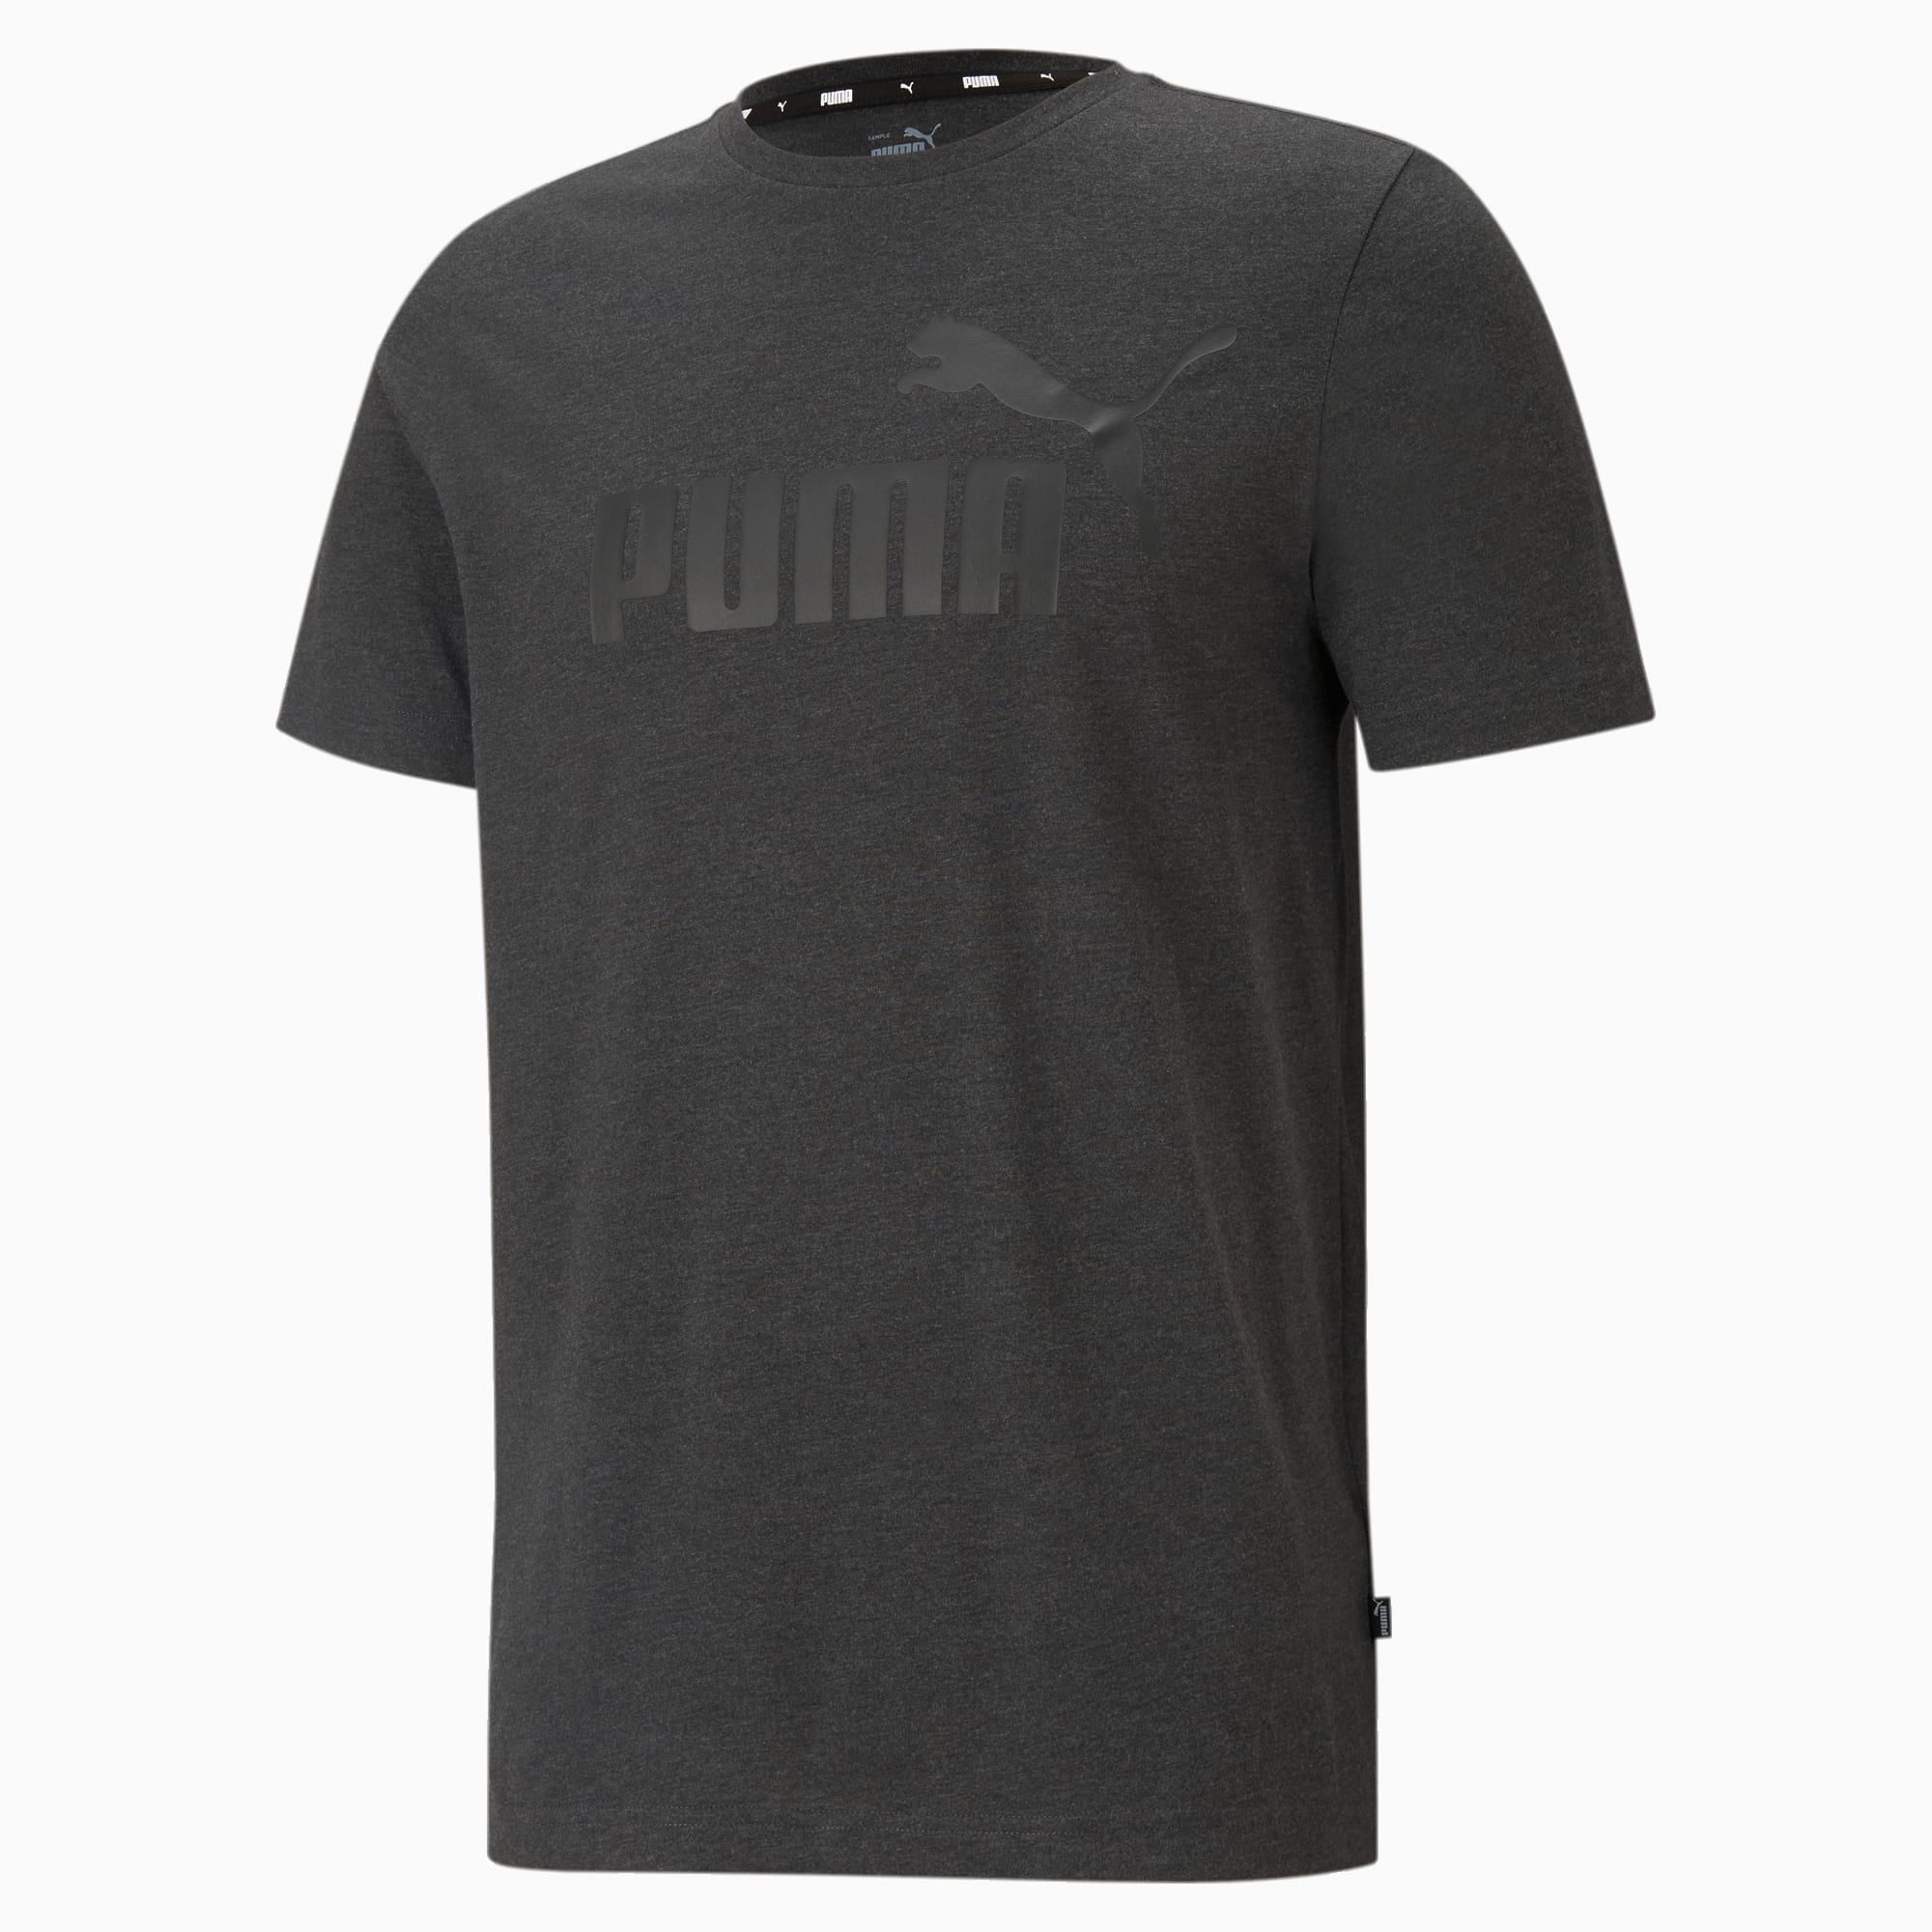 PUMA Essentials Heather Men's T-Shirt, Dark Grey Heather, Size XS, Clothing